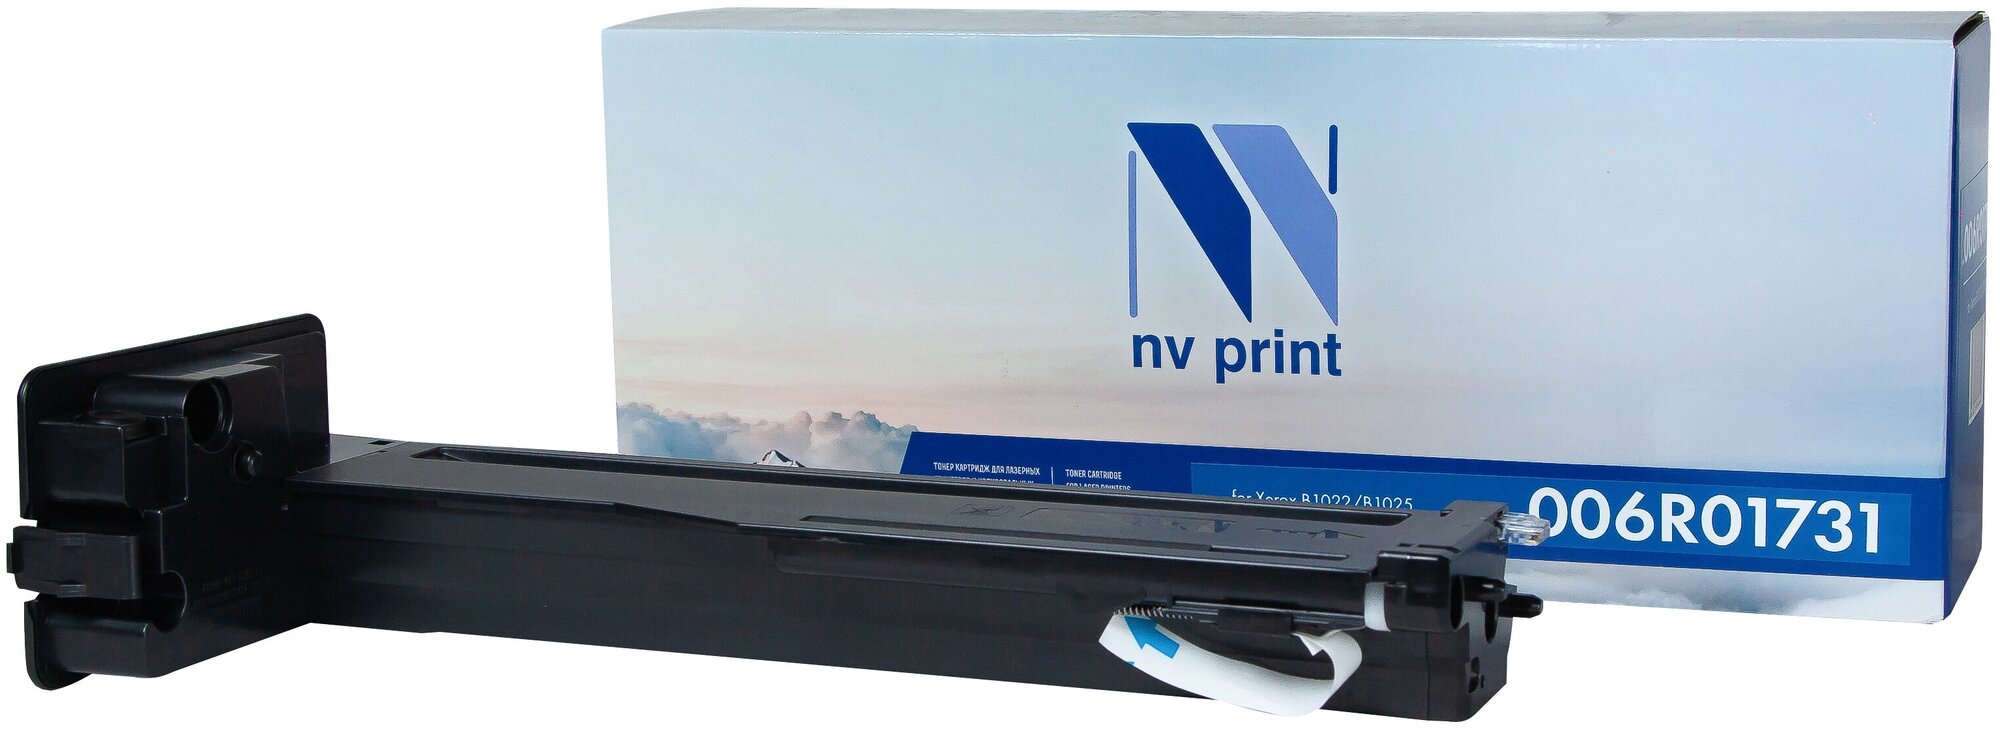 Тонер-картридж NV Print NV-006R01731 для для Xerox B1022, Xerox B1025, 006R01731 (совместимый, чёрный, 13700 стр.)